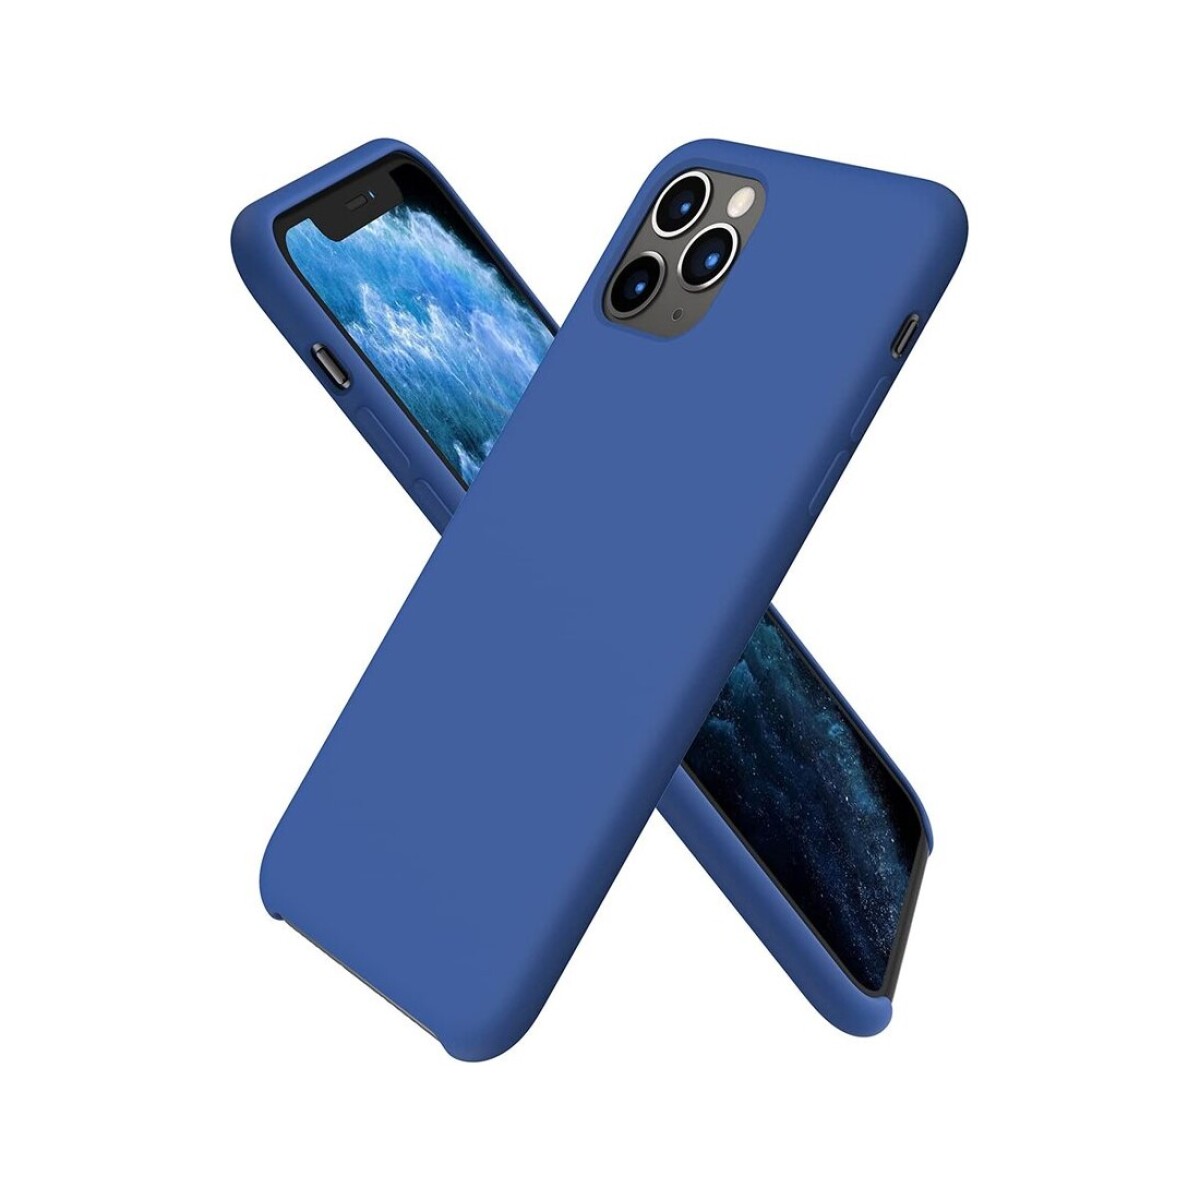 Protector case de silicona para iphone 11 pro max - Azul klein 